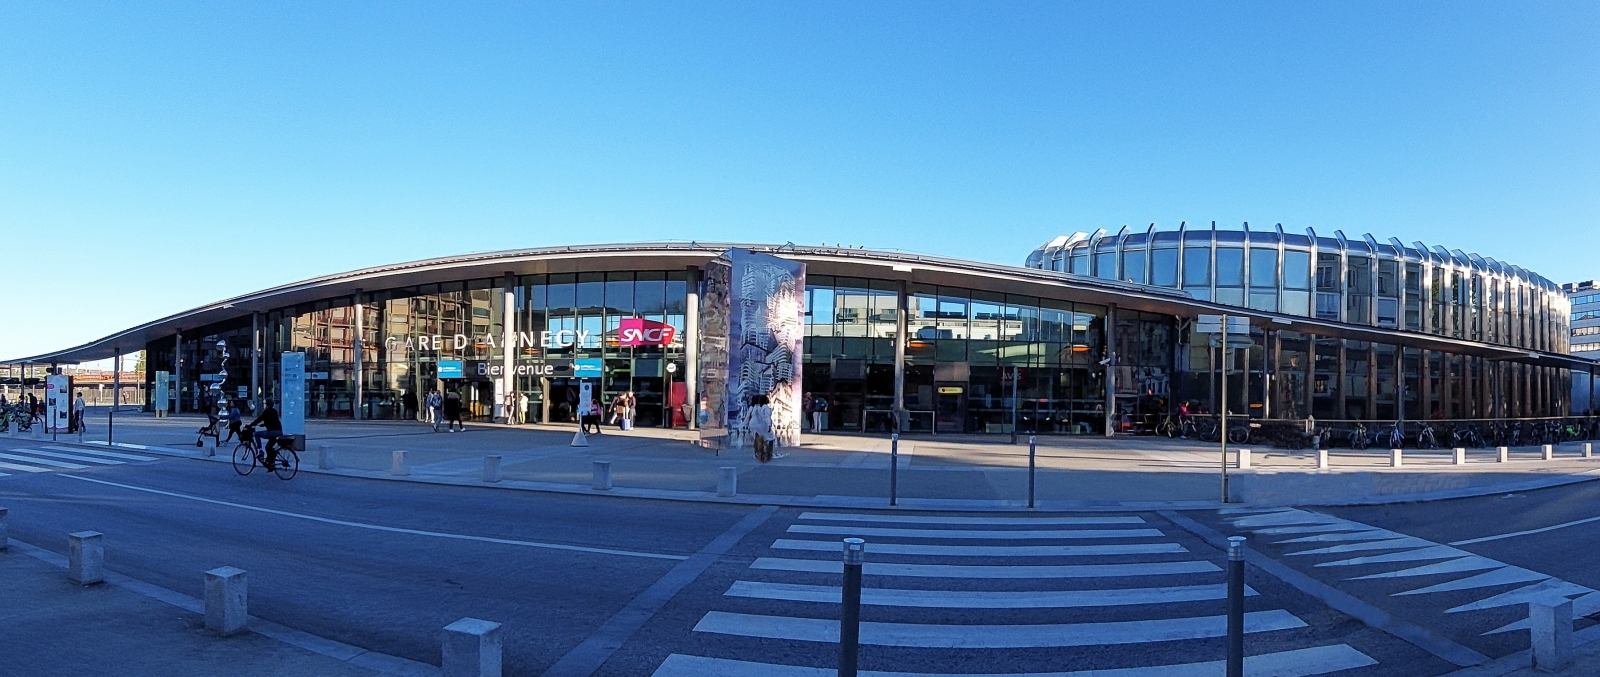 Panoramafoto des Bahnhofs von Annecy, aufgenommen an dem Städtischen Bushaltestellen Kreisel. 09.2022